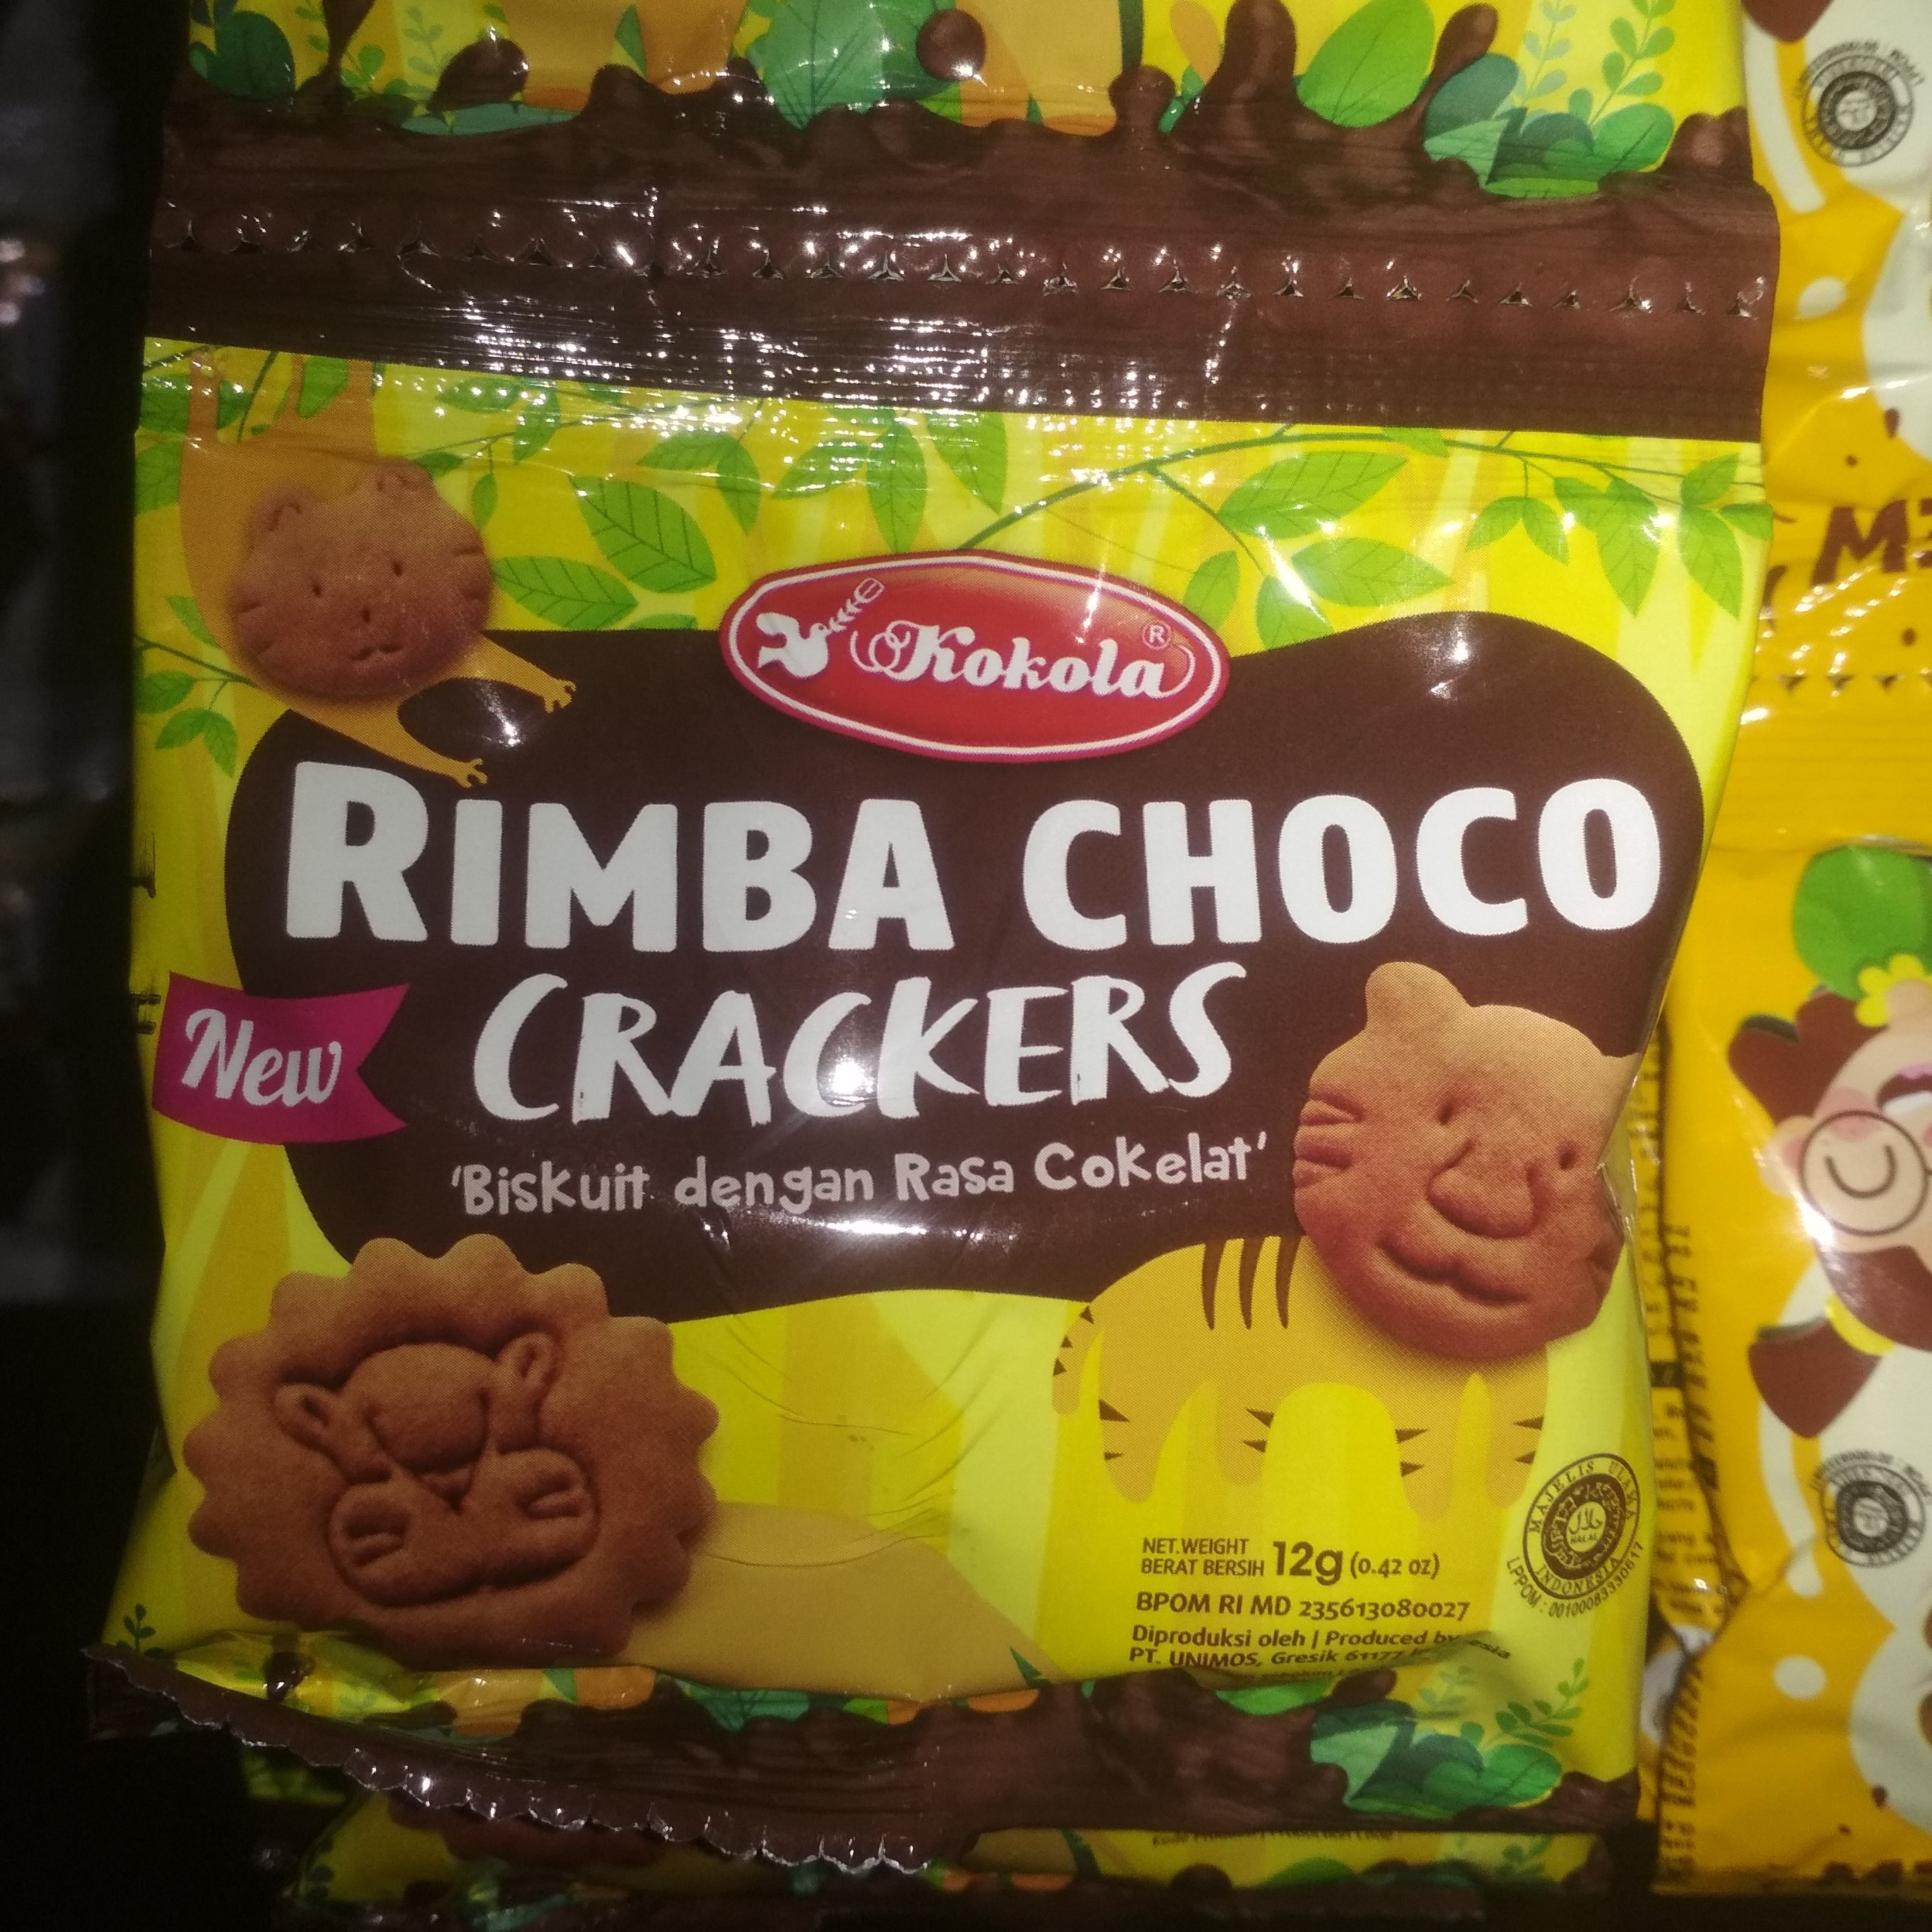 Rimba Choco Crackers